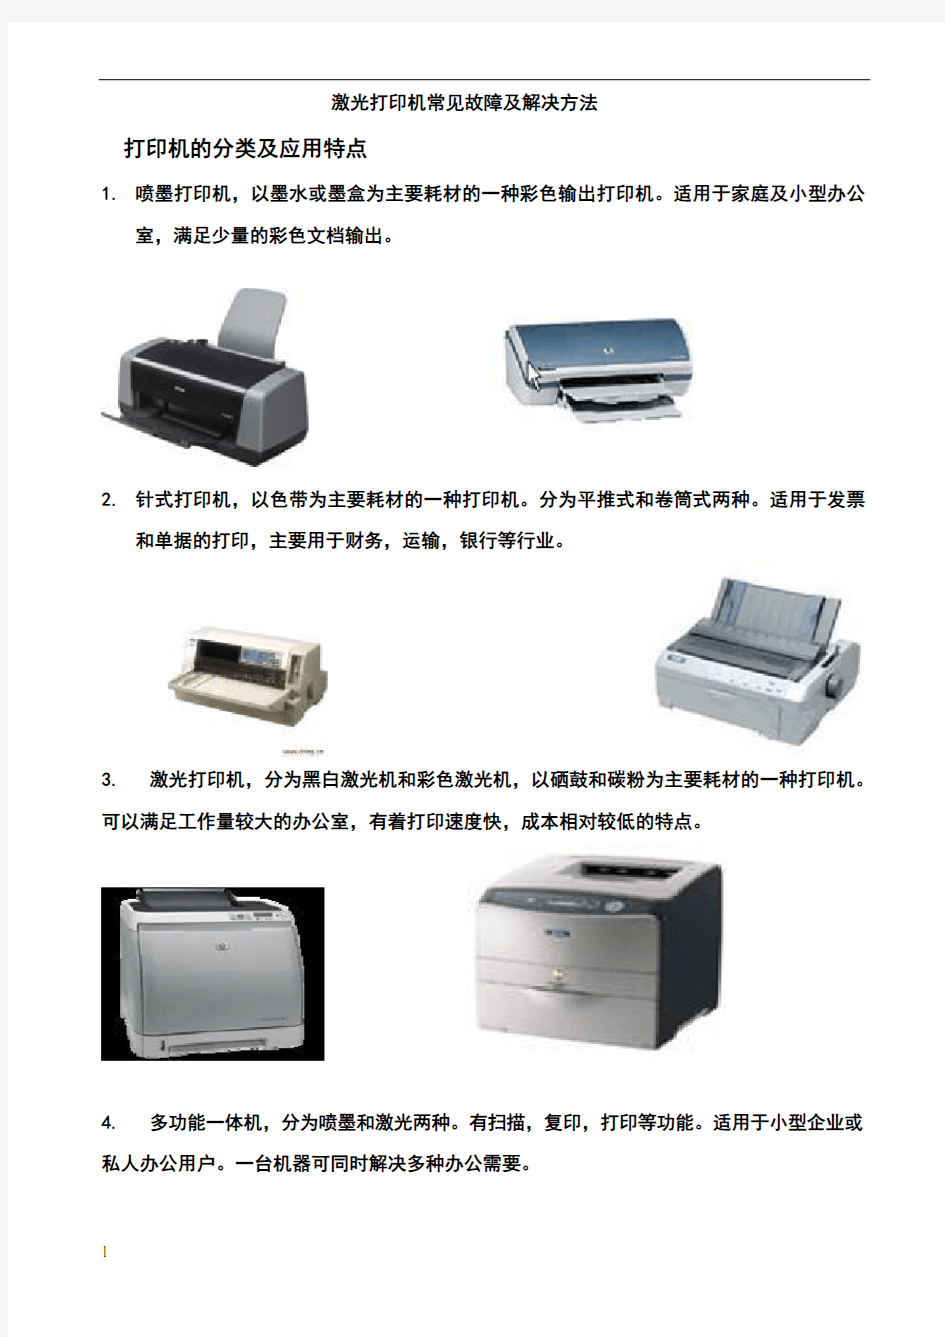 打印机常见故障及解决方法